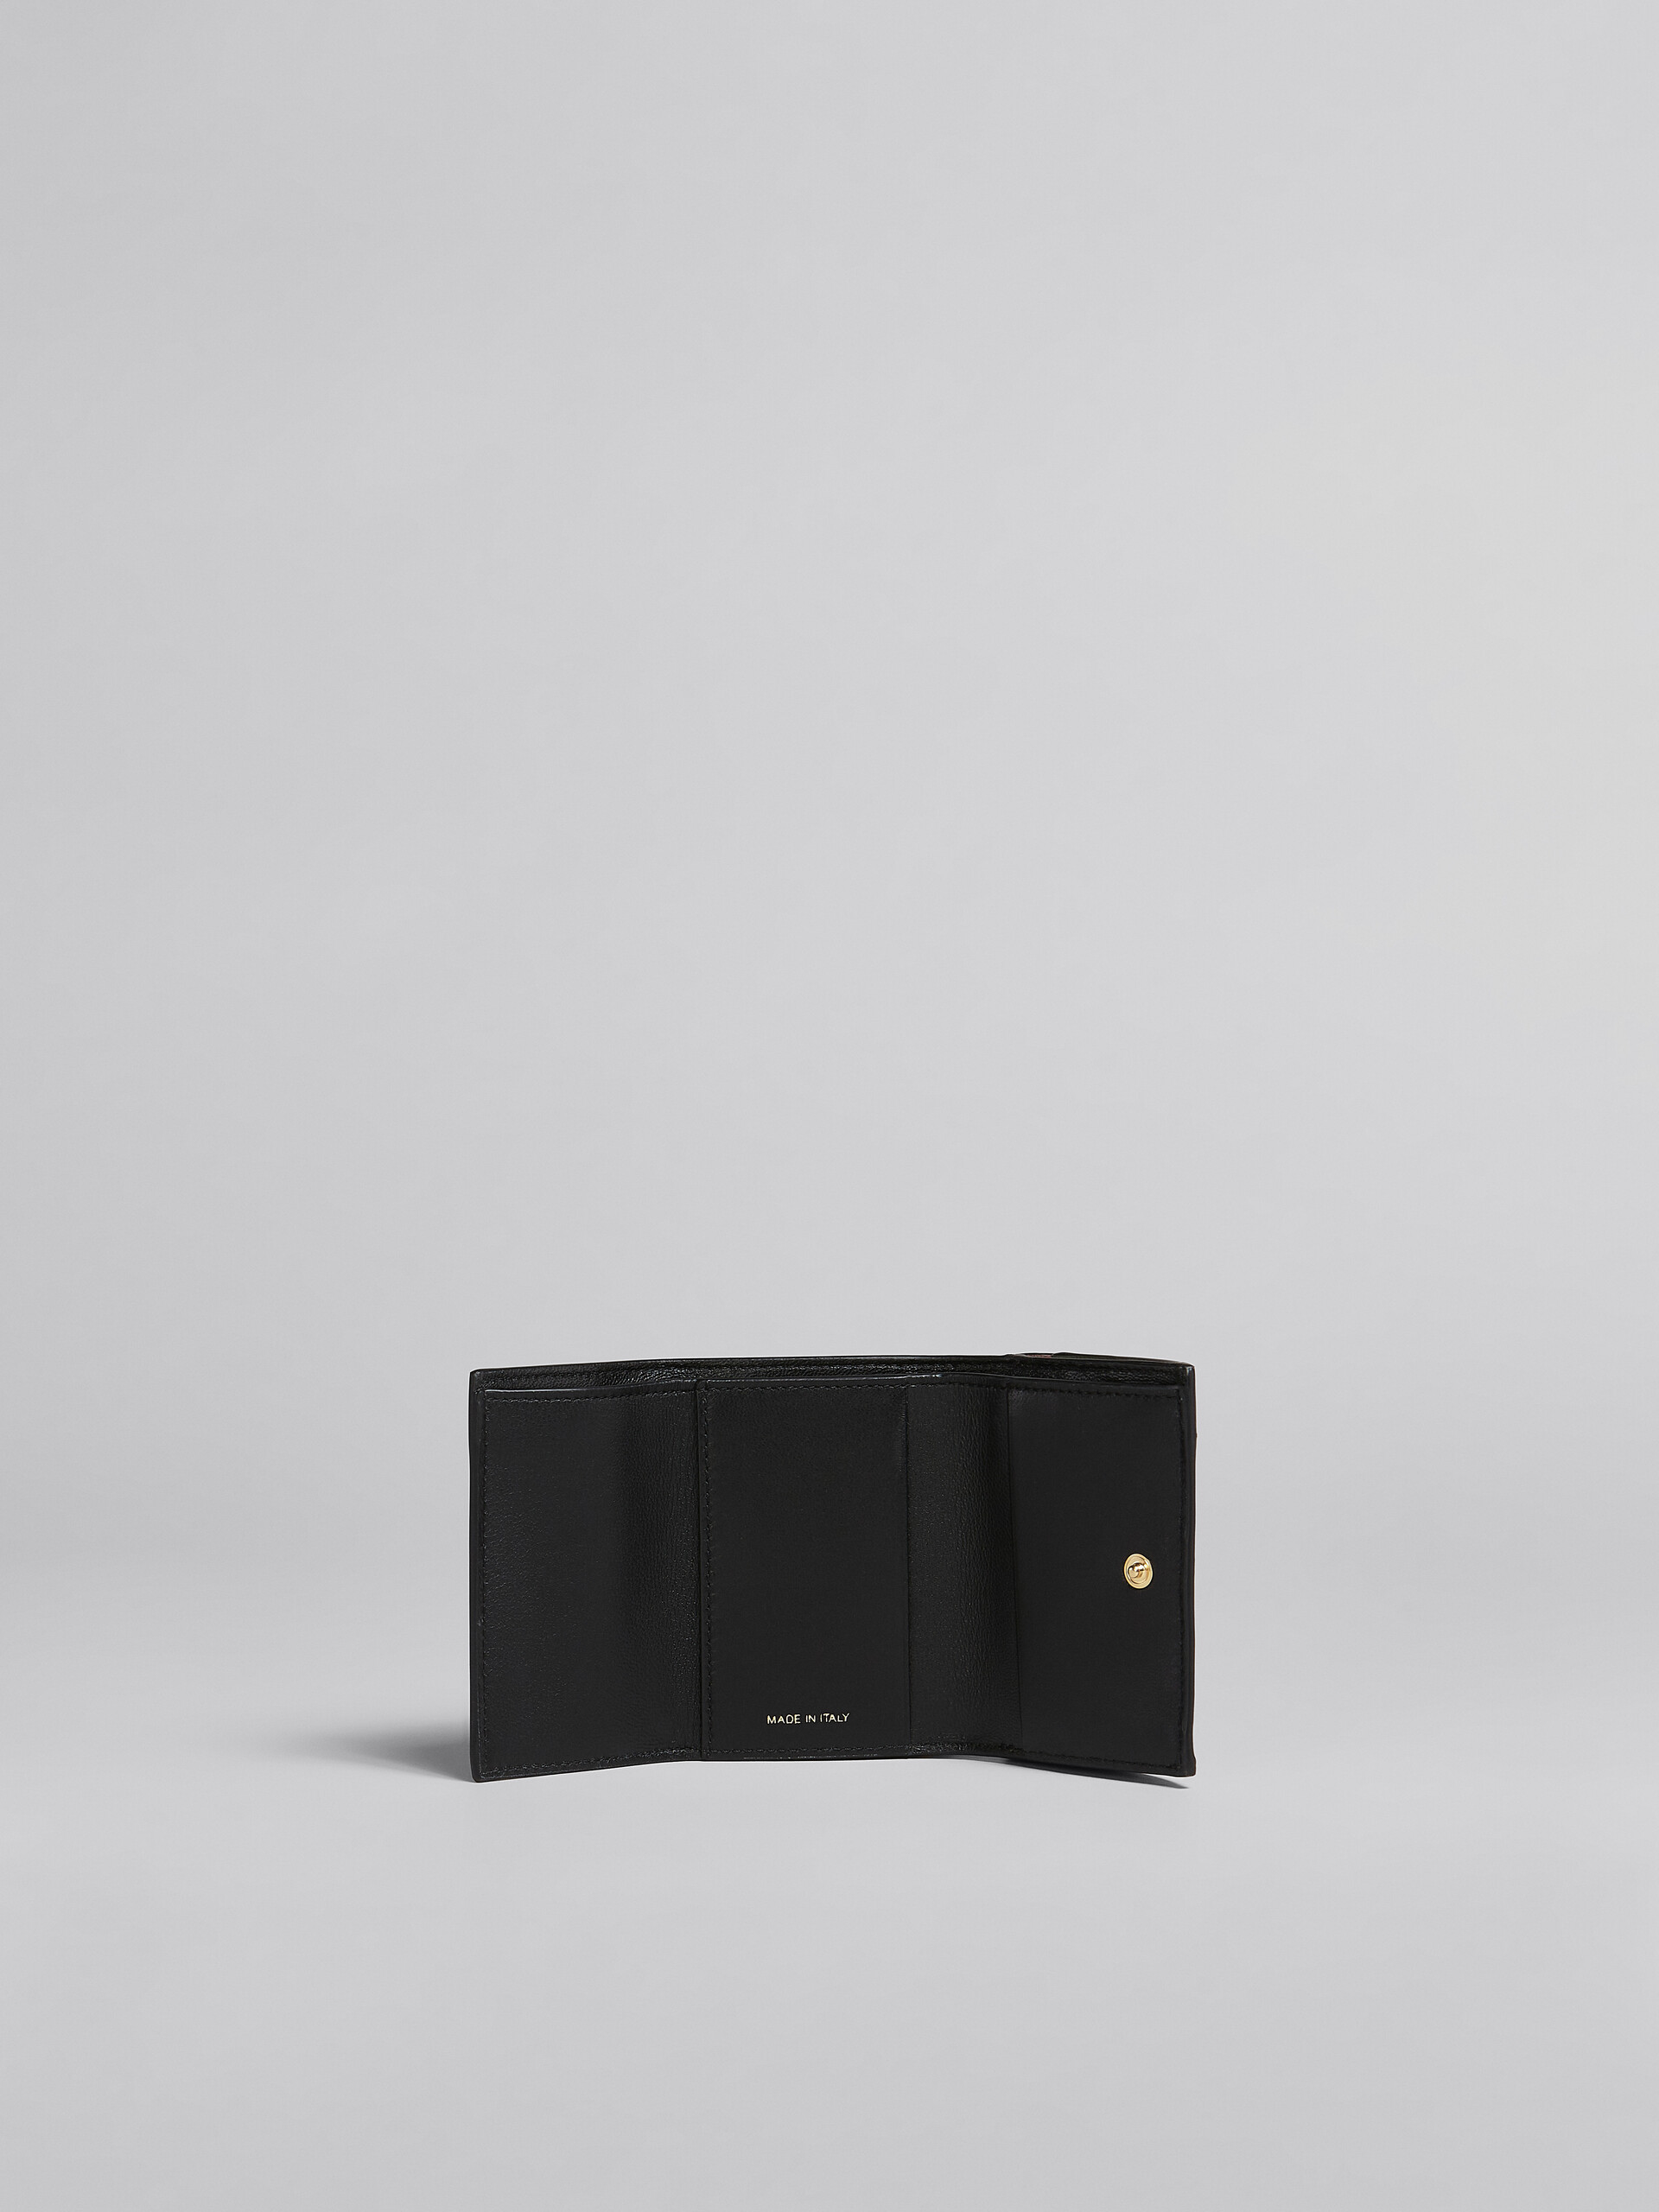 Dreifache Faltbrieftasche aus braunem Saffiano-Leder - Brieftaschen - Image 2